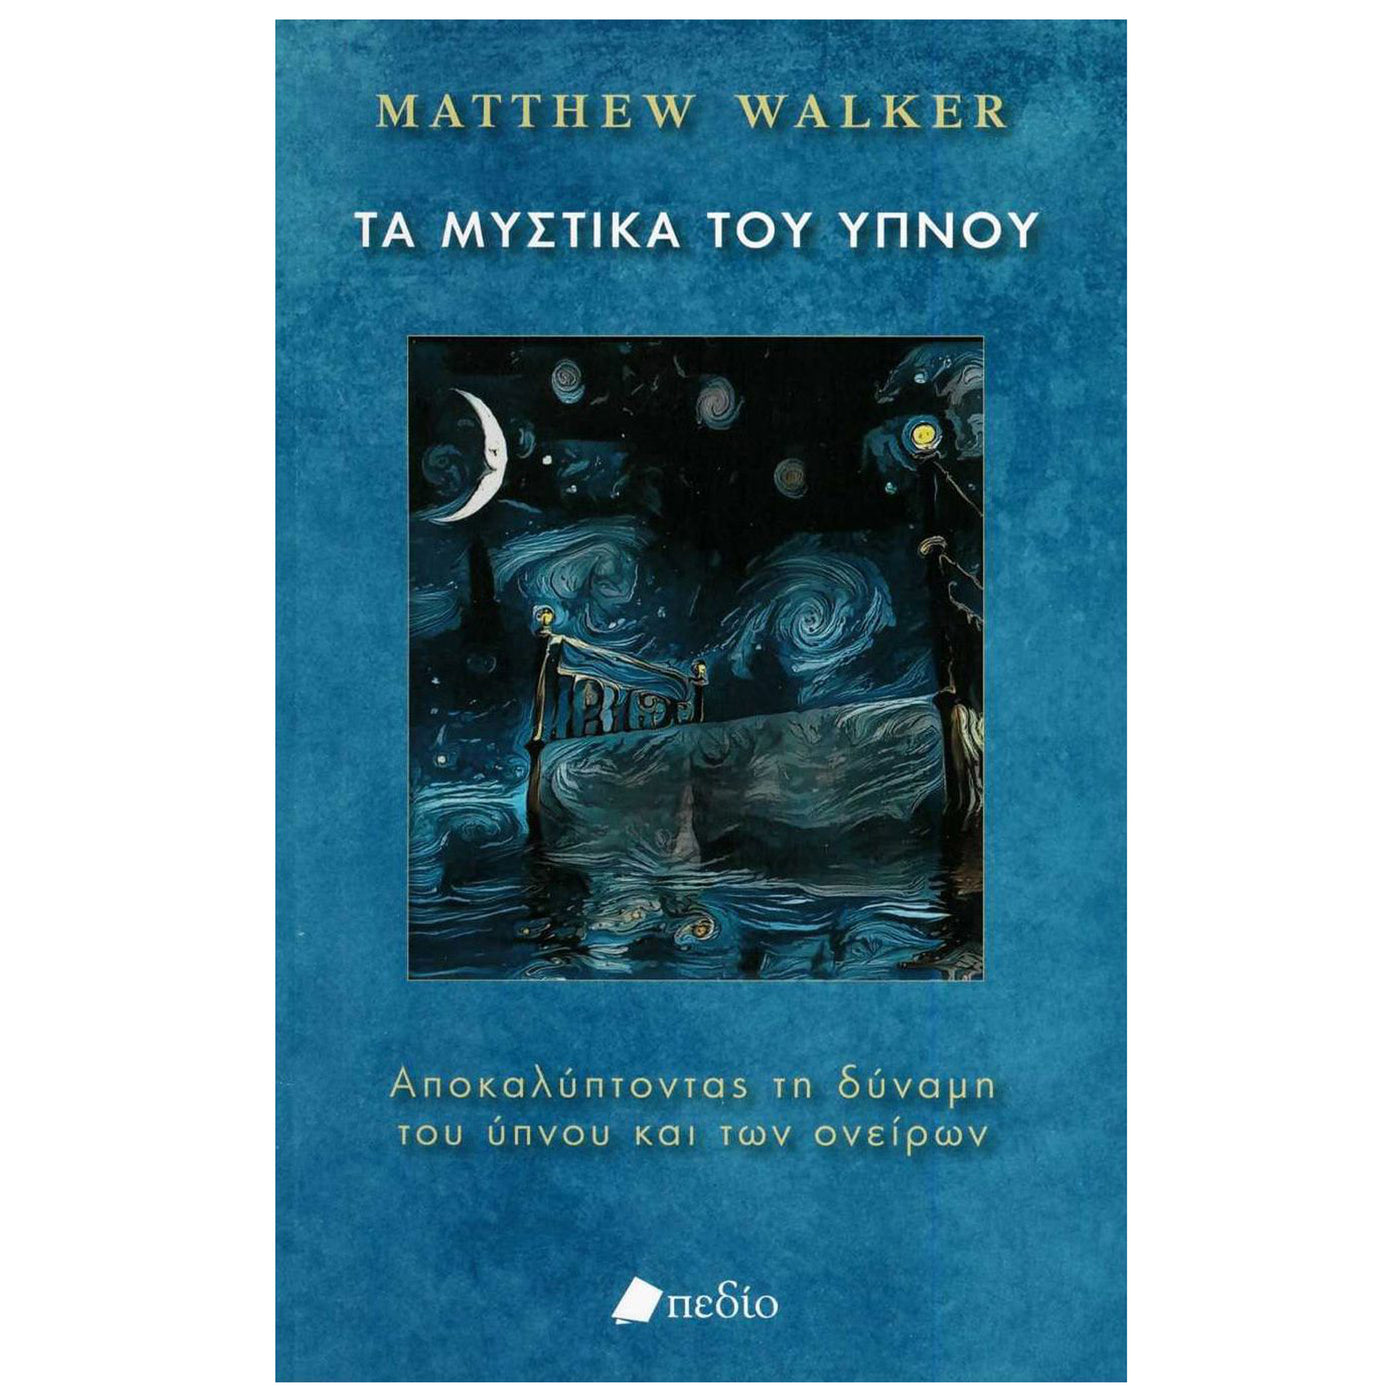 ΒΙΒΛΙΟ "ΤΑ ΜΥΣΤΙΚΑ ΤΟΥ ΥΠΝΟΥ" ΤΟΥ MATTHEW WALKER